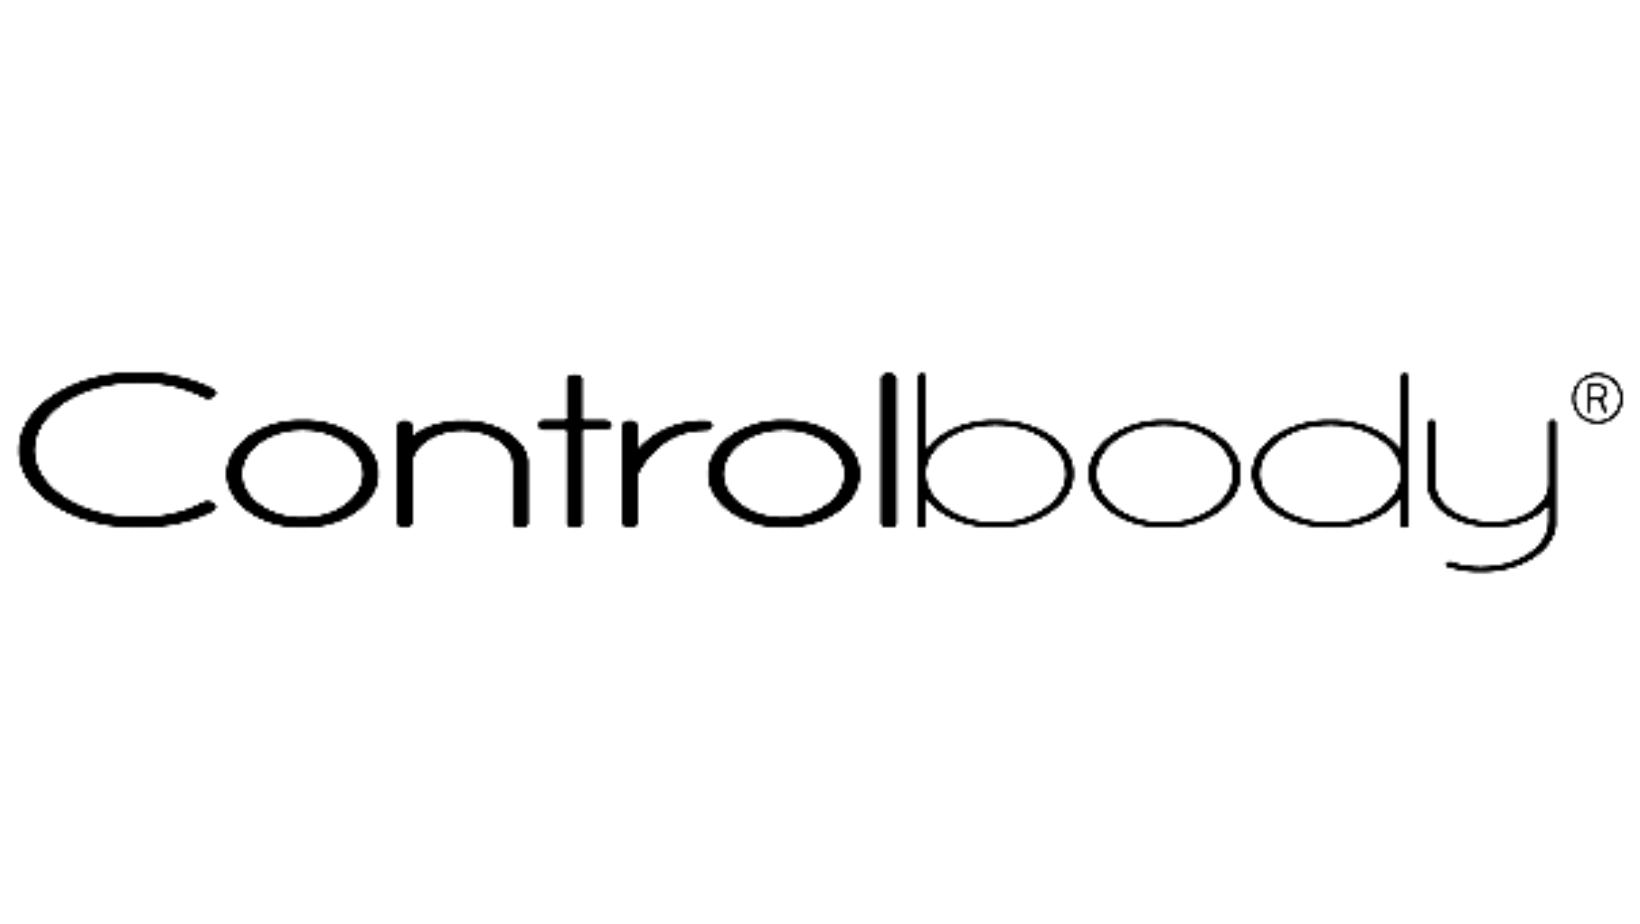 Control Body